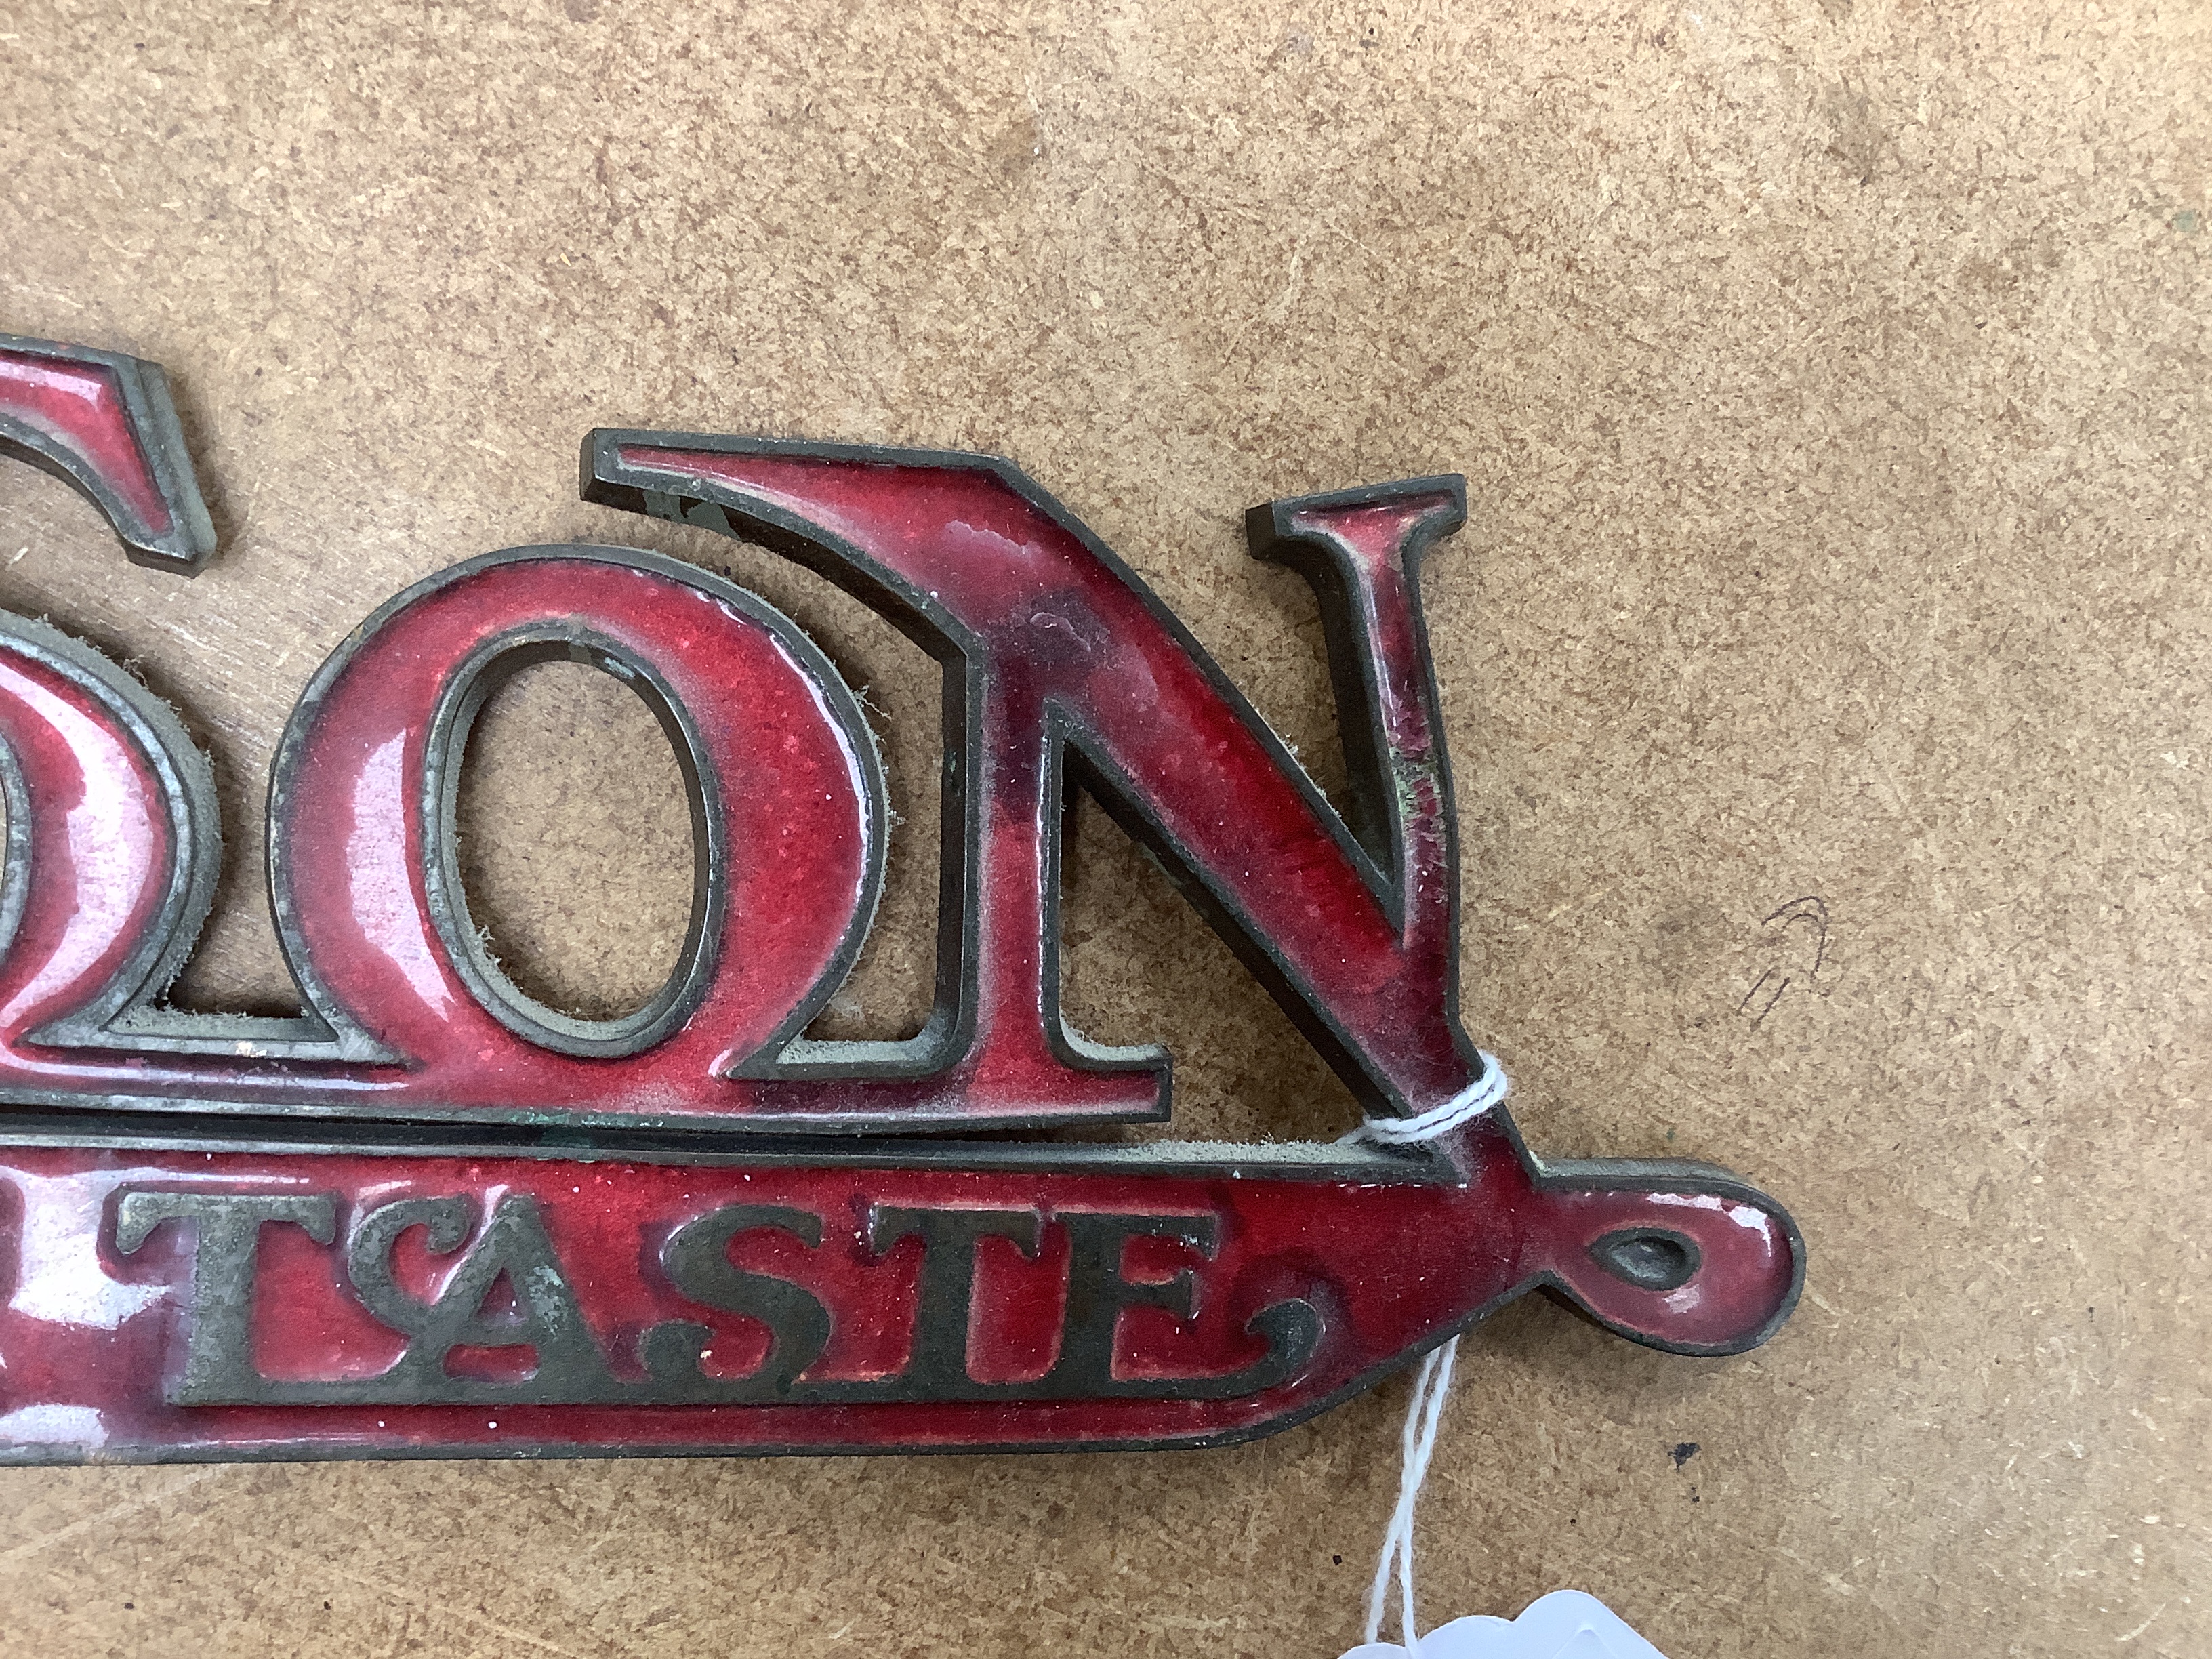 An enamelled bronze 'Montague Burton The Tailor of Taste' shop sign, 41cm wide